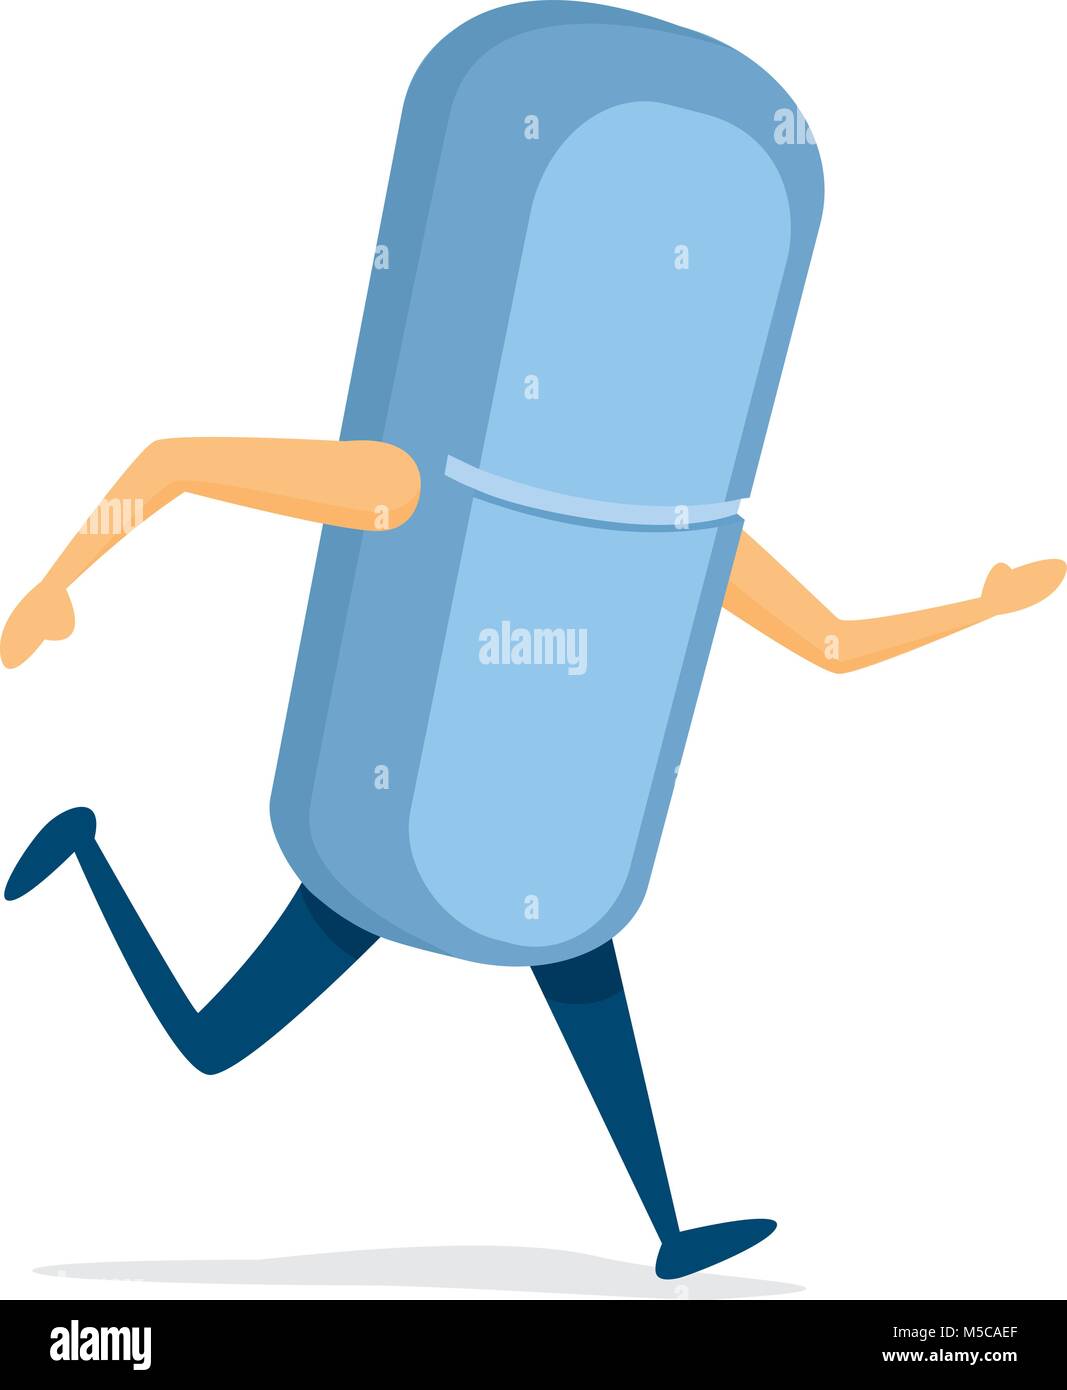 Ilustración de dibujos animados de la píldora azul en la carrera de medicina Ilustración del Vector